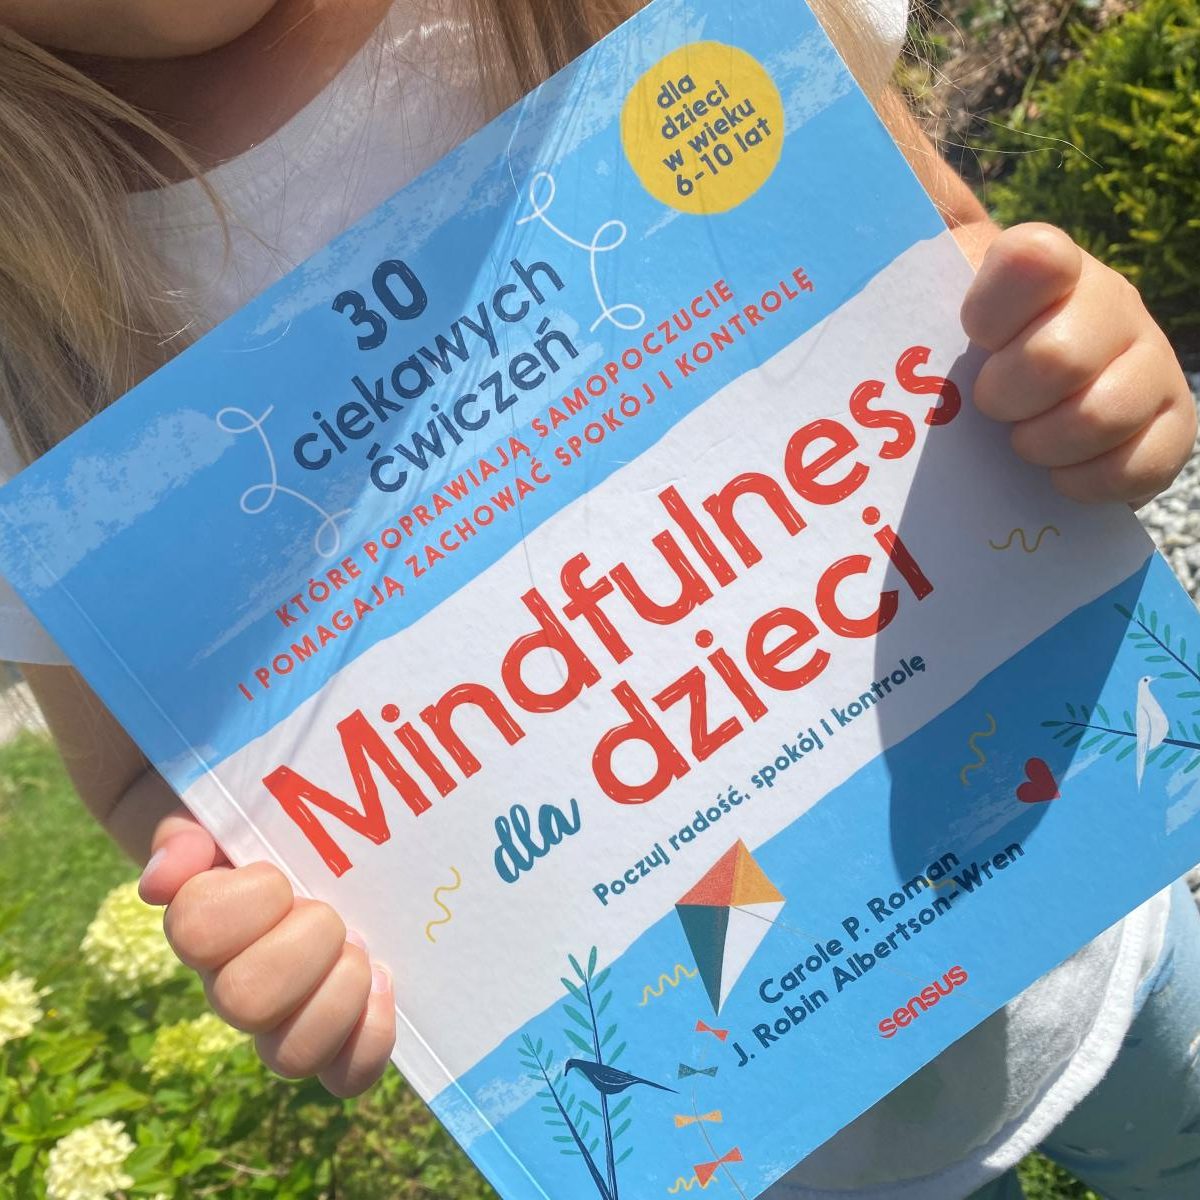 Mindfulness dla dzieci. Poczuj radość, spokój i kontrolę